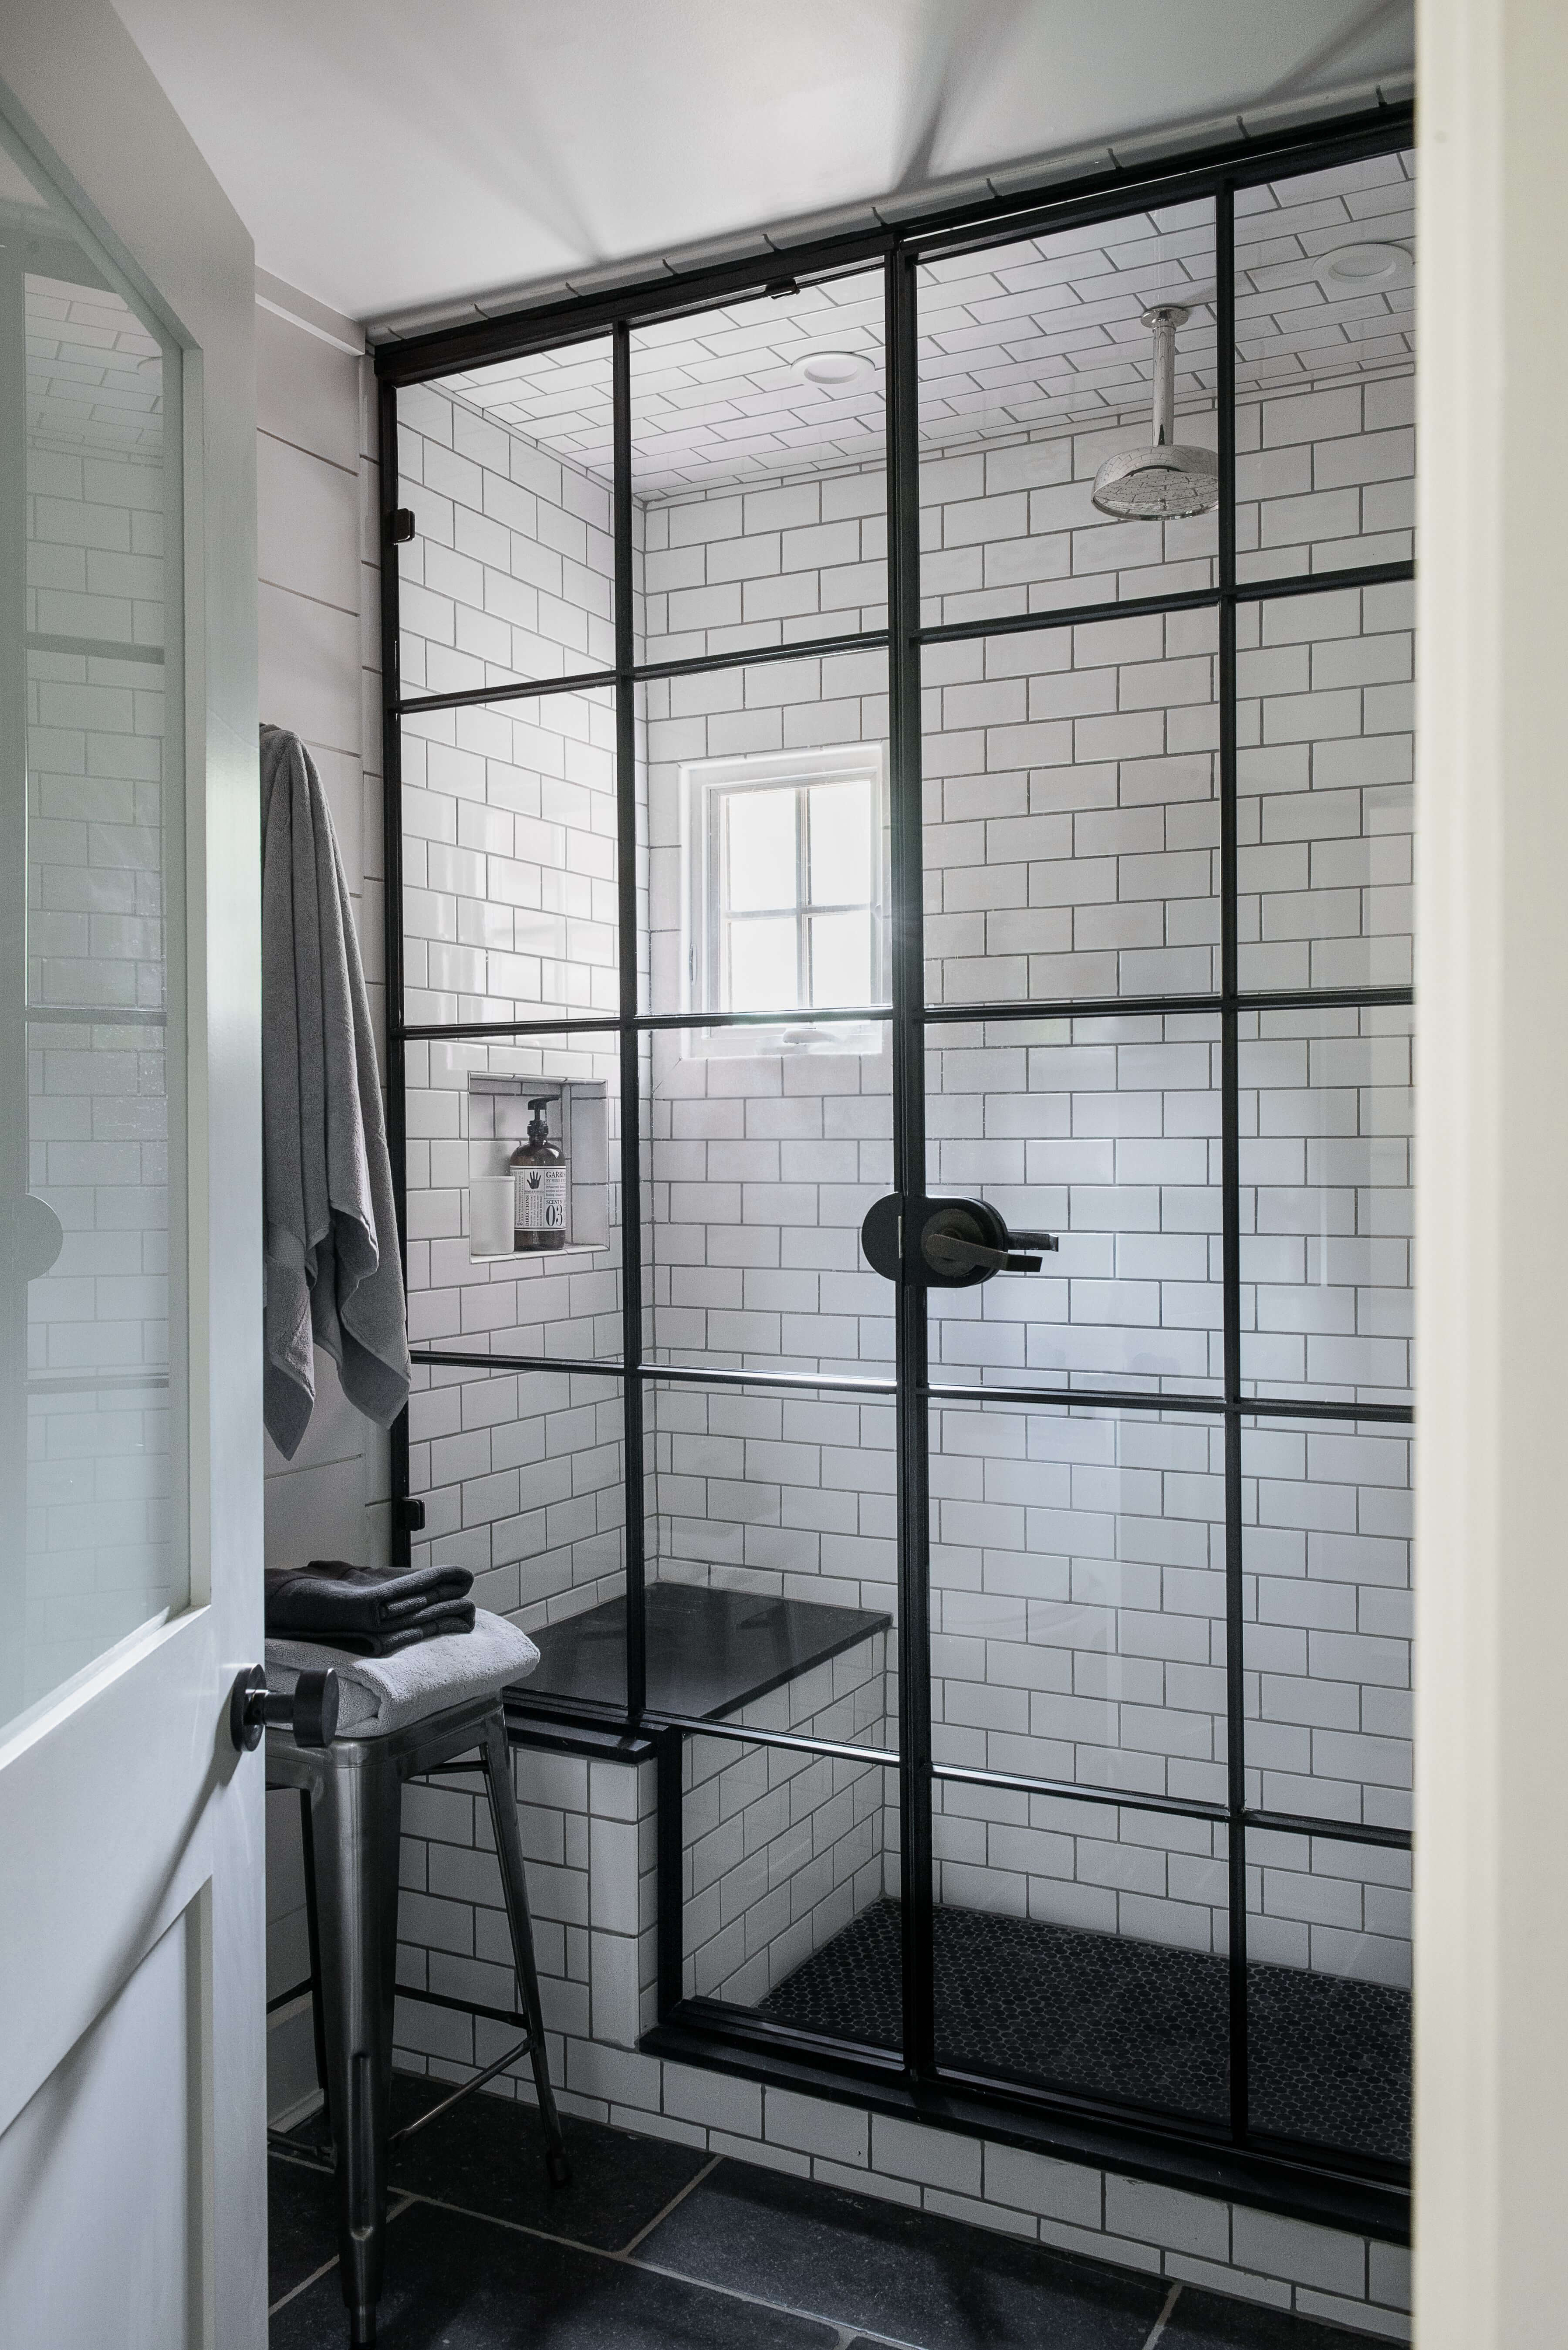 монохромная черно-белая ванная комната со стеклянной перегородкой